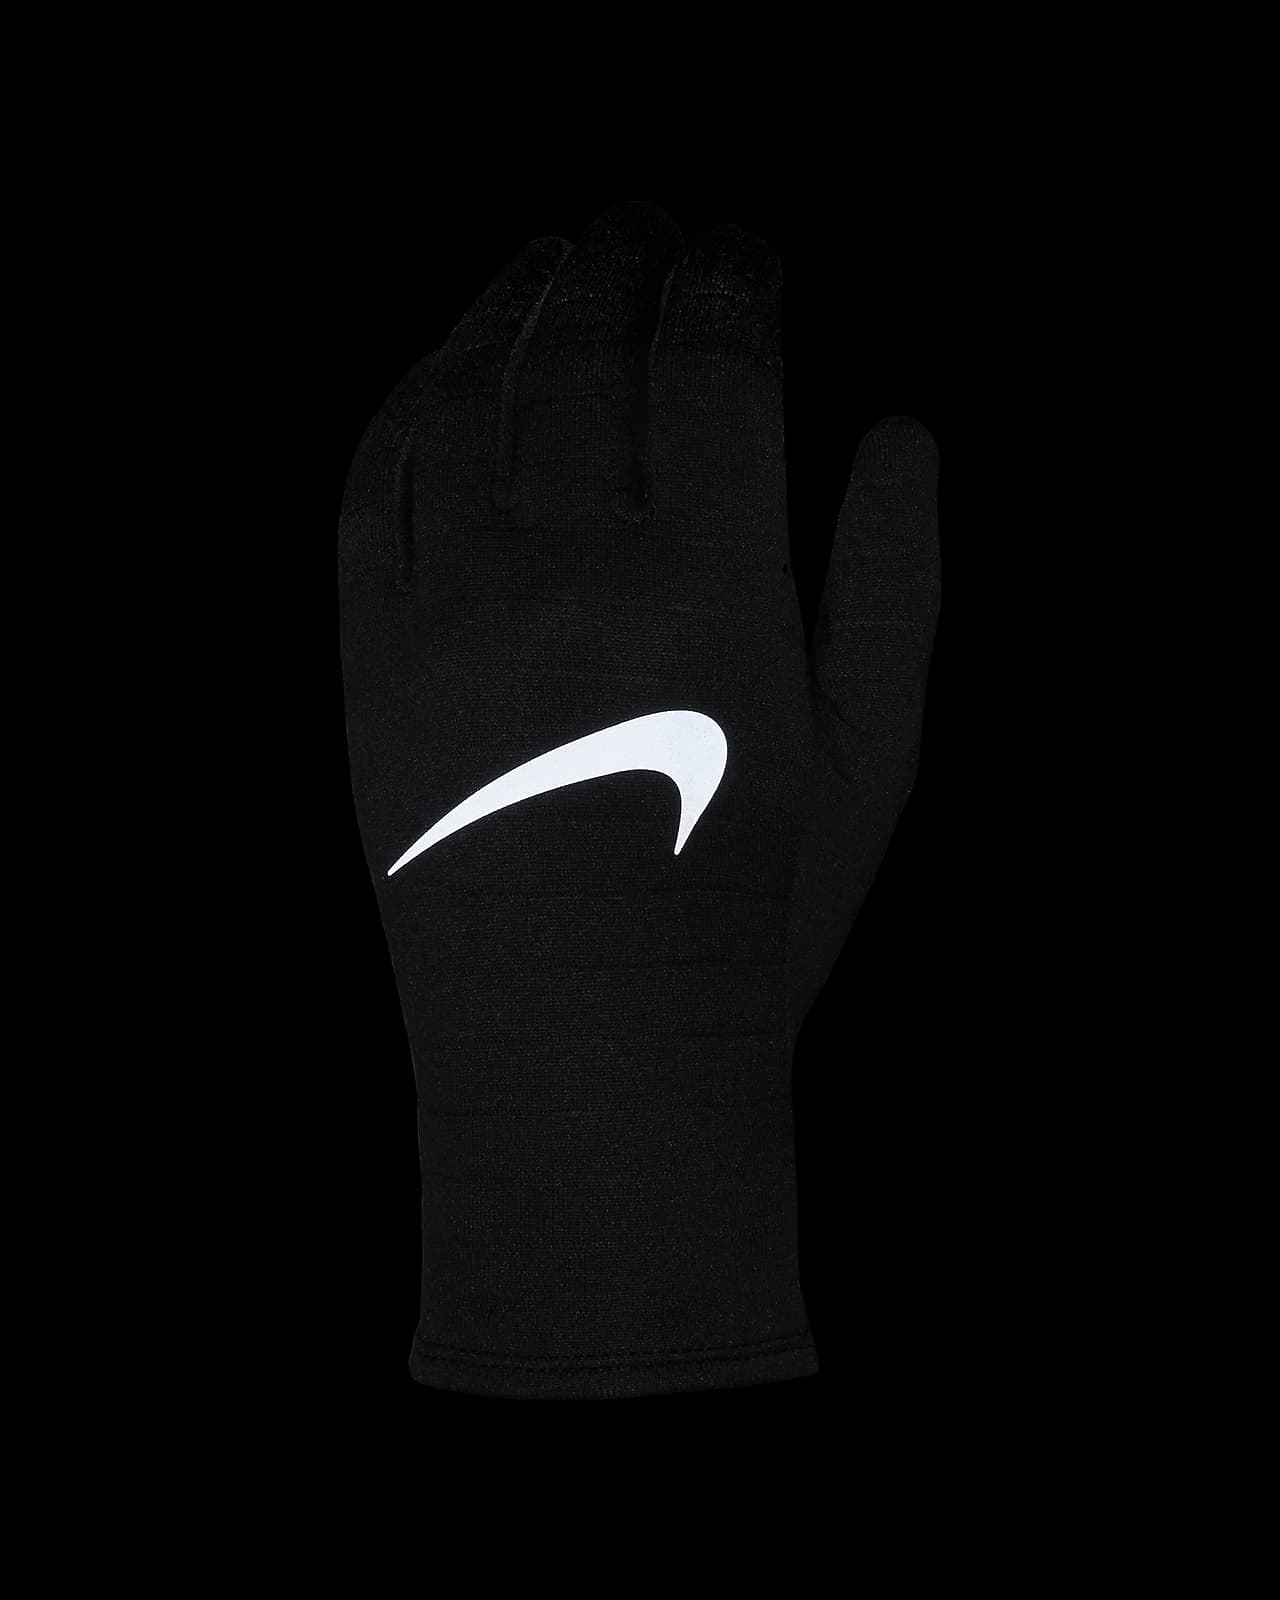 Nike Sphere Men's Running Gloves.